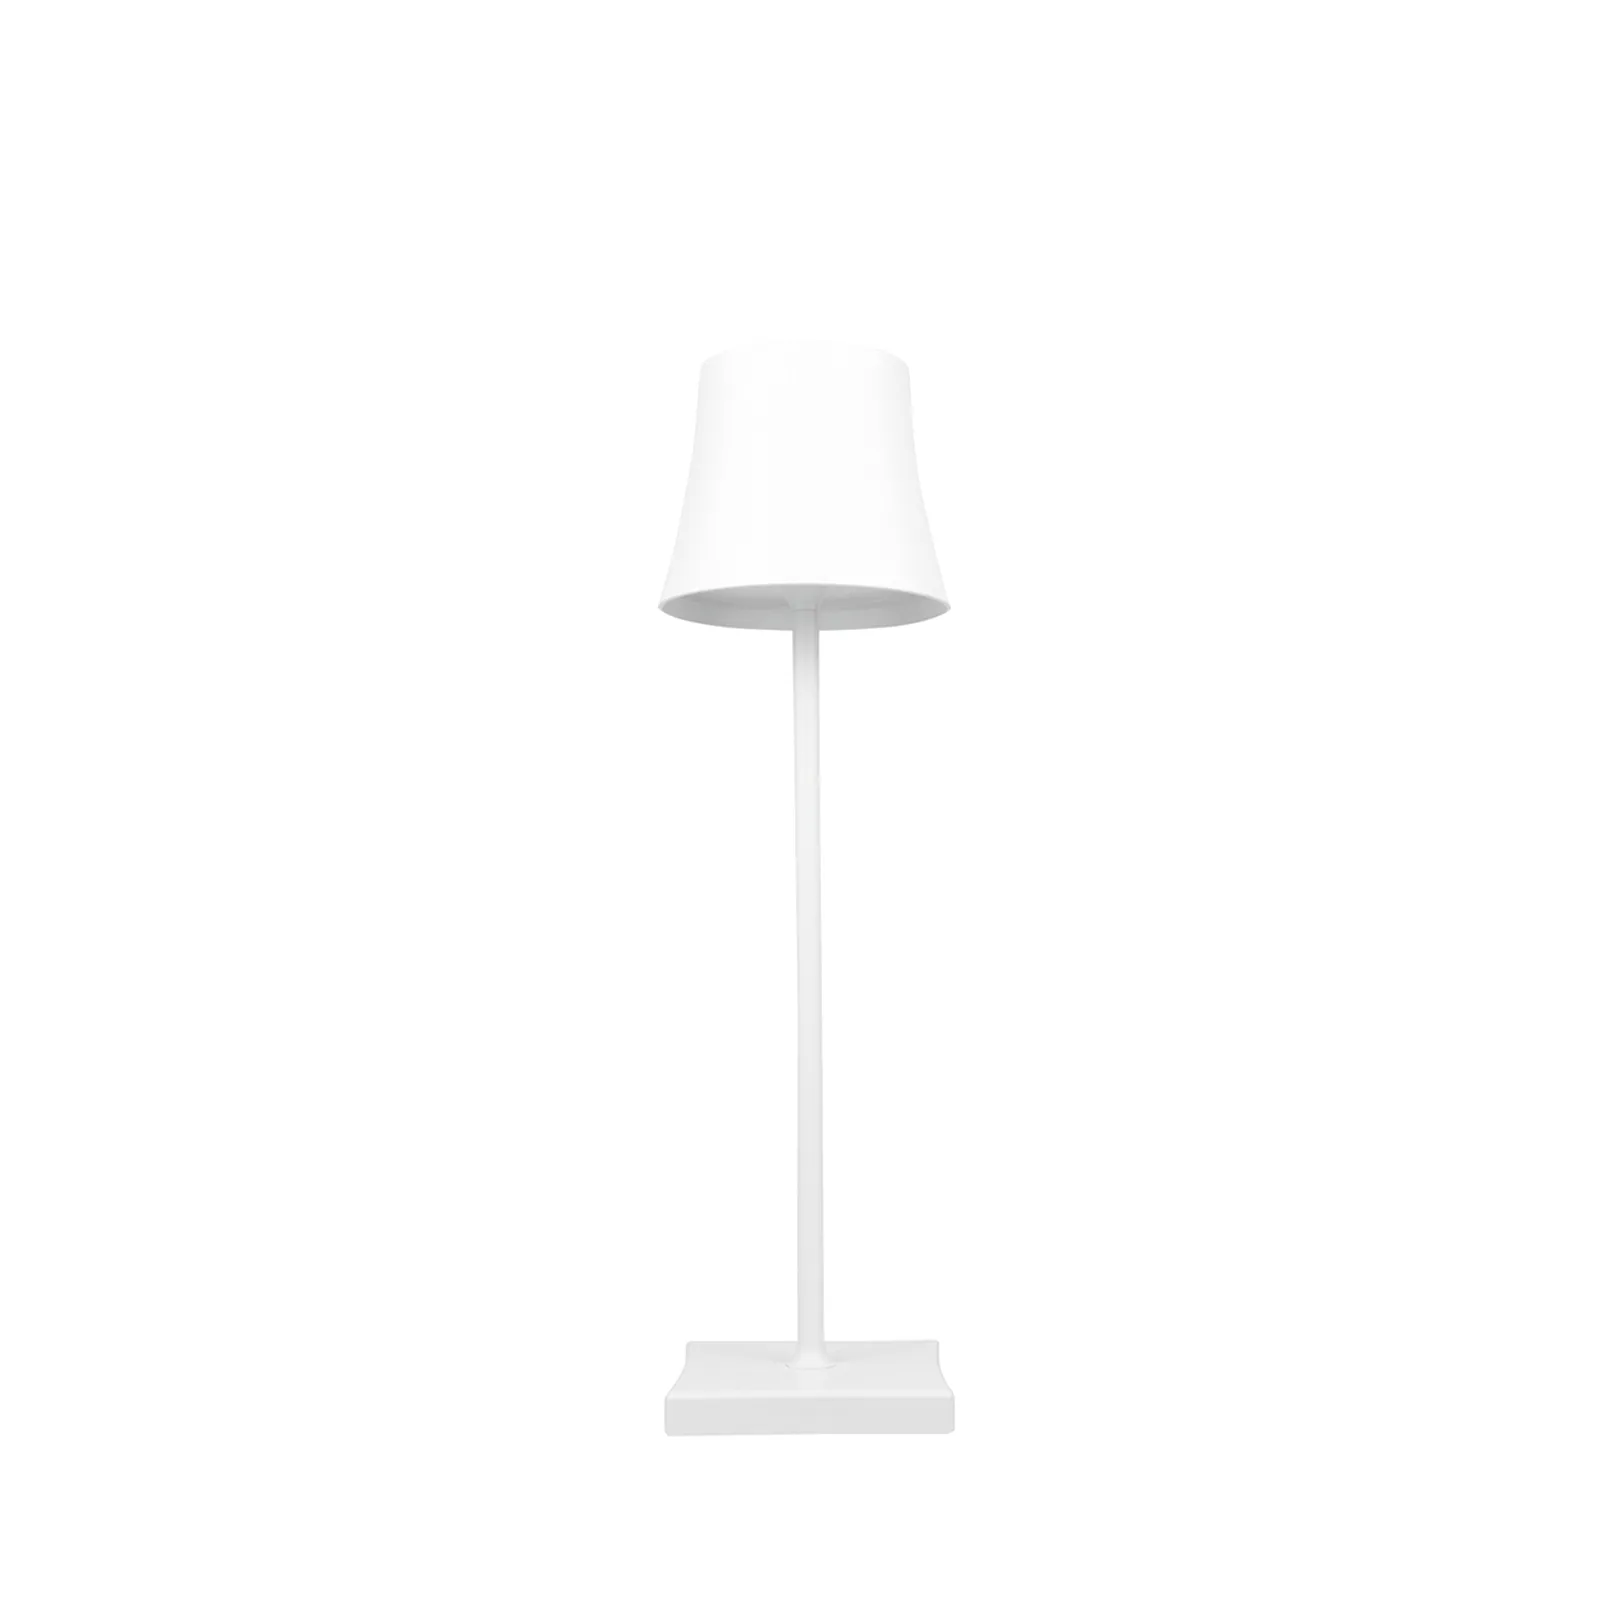 Madckdedrt مصابيح الطاولة اللاسلكية مصابيح بطارية تعمل بالبطارية مصباح مصباح LED قابل للضوء IP54 مقاوم للماء للاستخدام الداخلي والخارجي أبيض